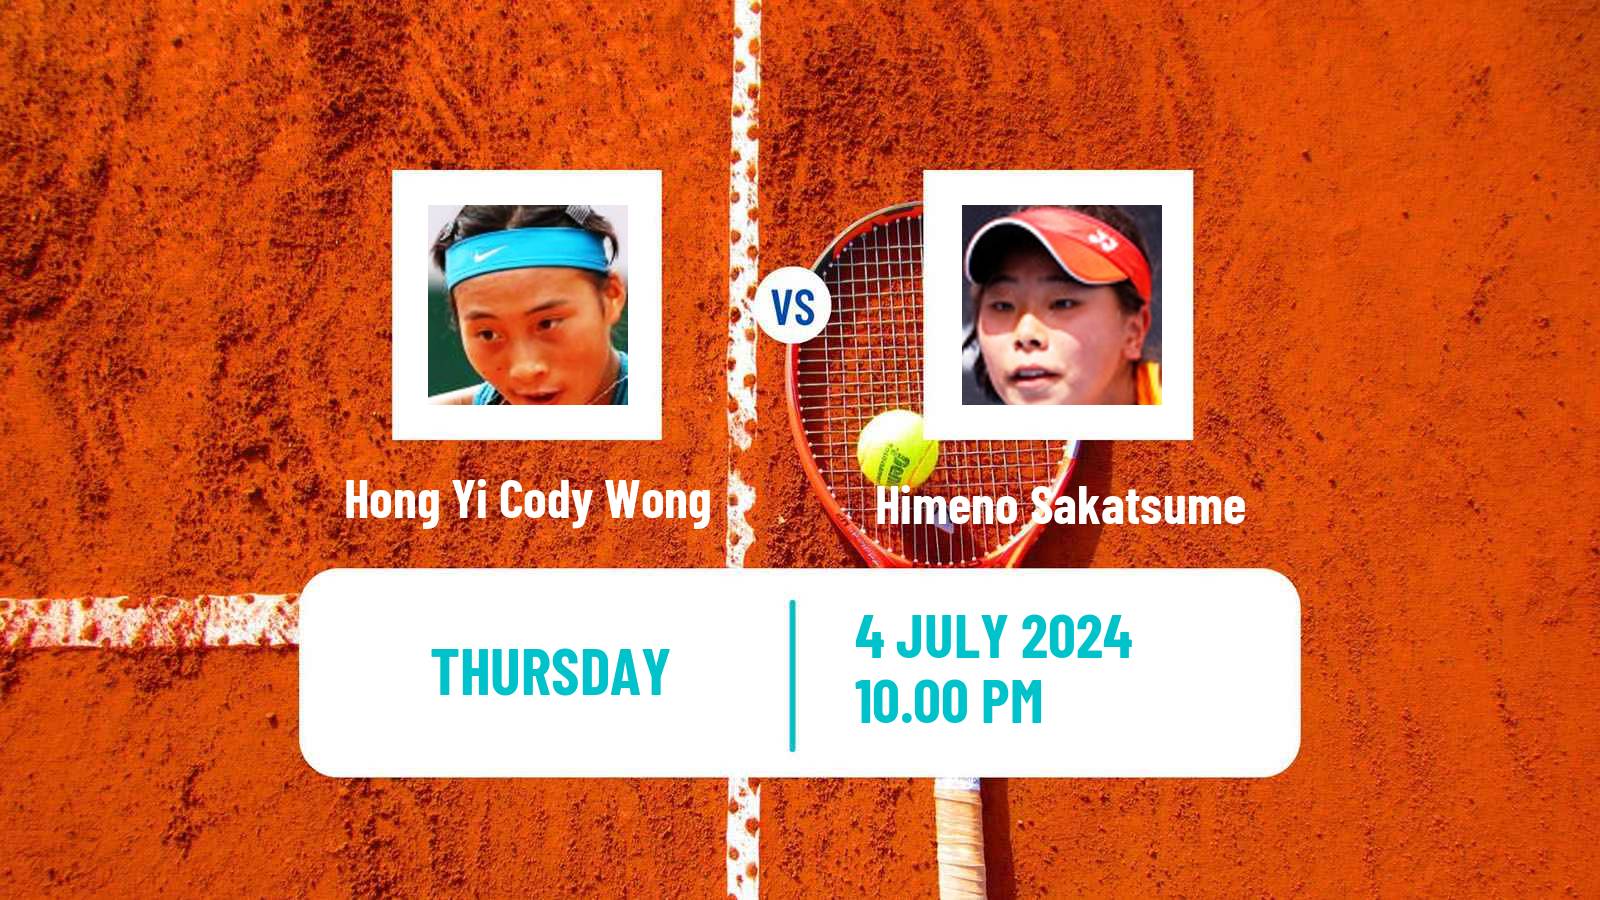 Tennis ITF W35 Hong Kong Women Hong Yi Cody Wong - Himeno Sakatsume